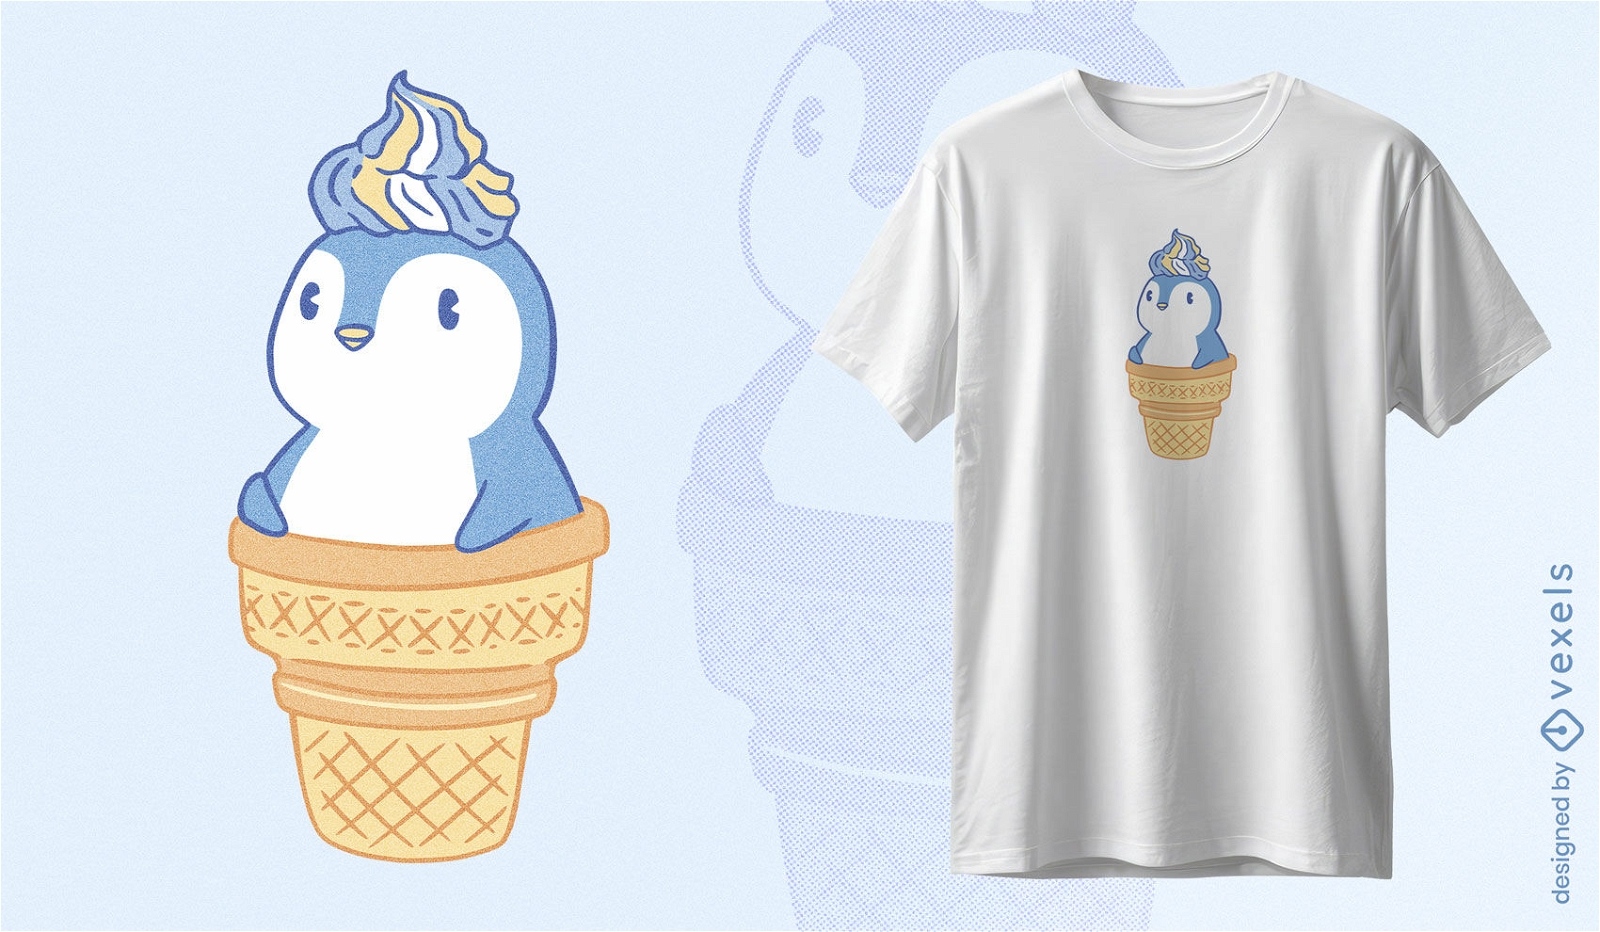 Penguin ice cream t-shirt design